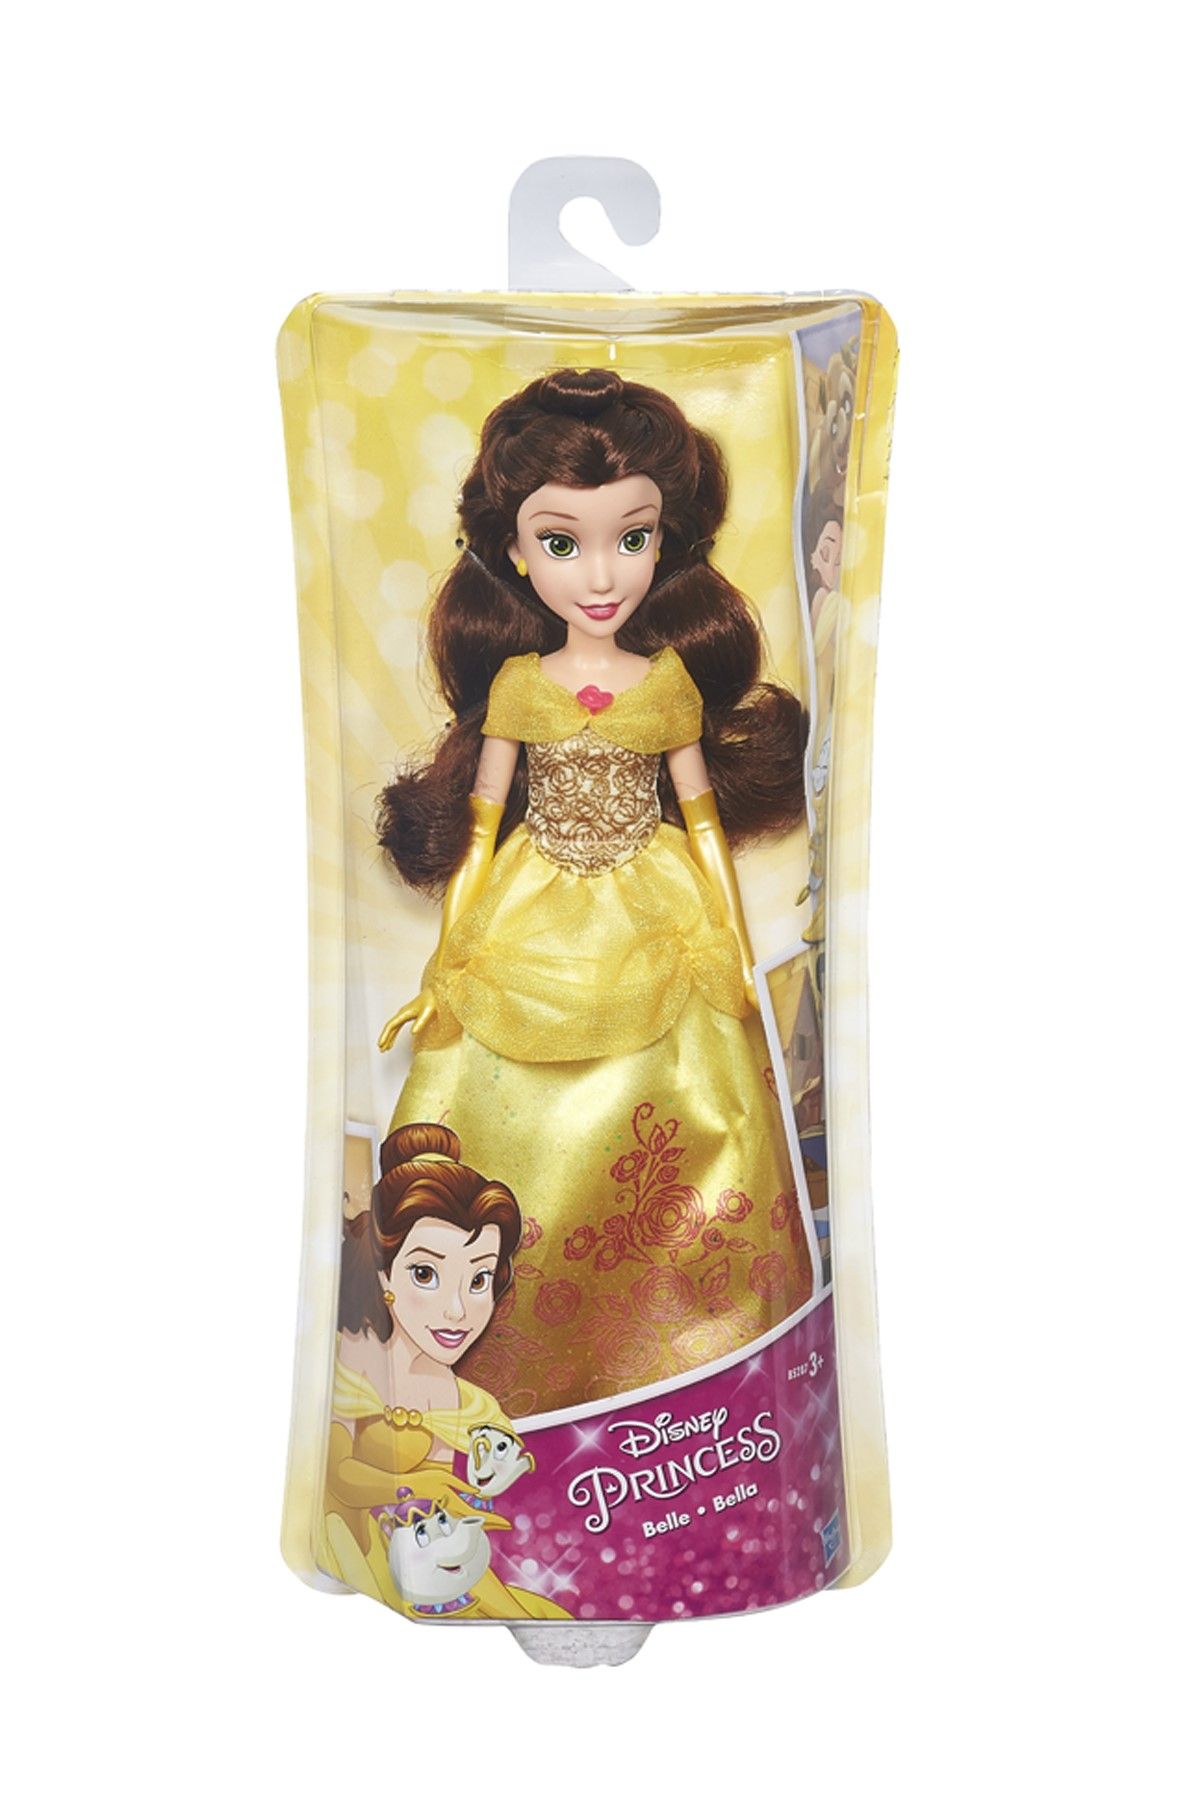 DİSNEY Disney Princess Işıltılı Prensesler - Bella